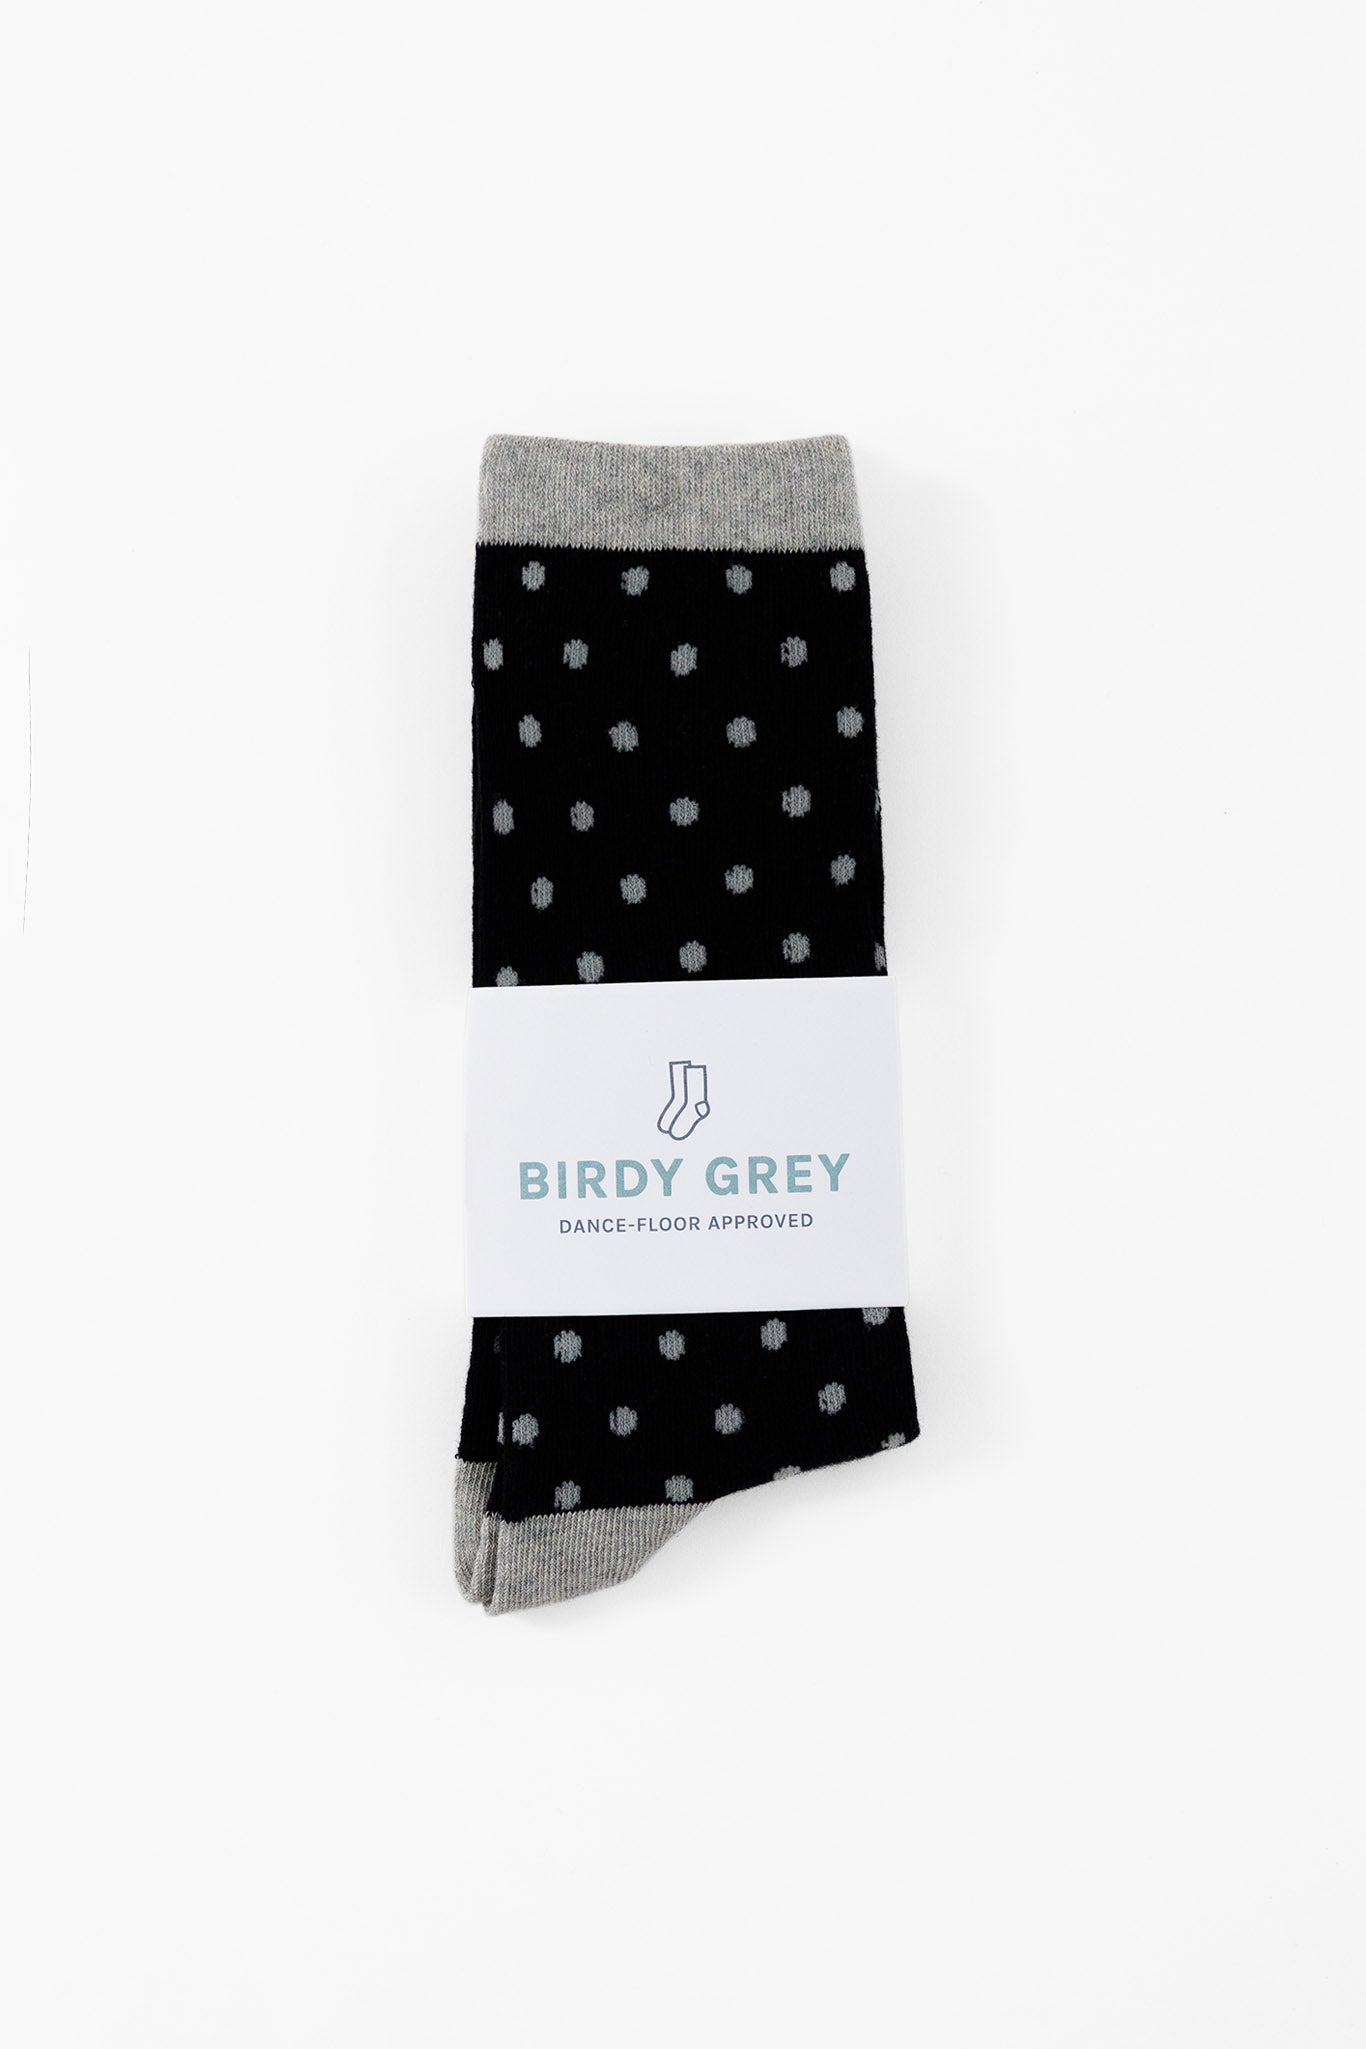 Grey and Black Polka Dot Groomsmen Socks